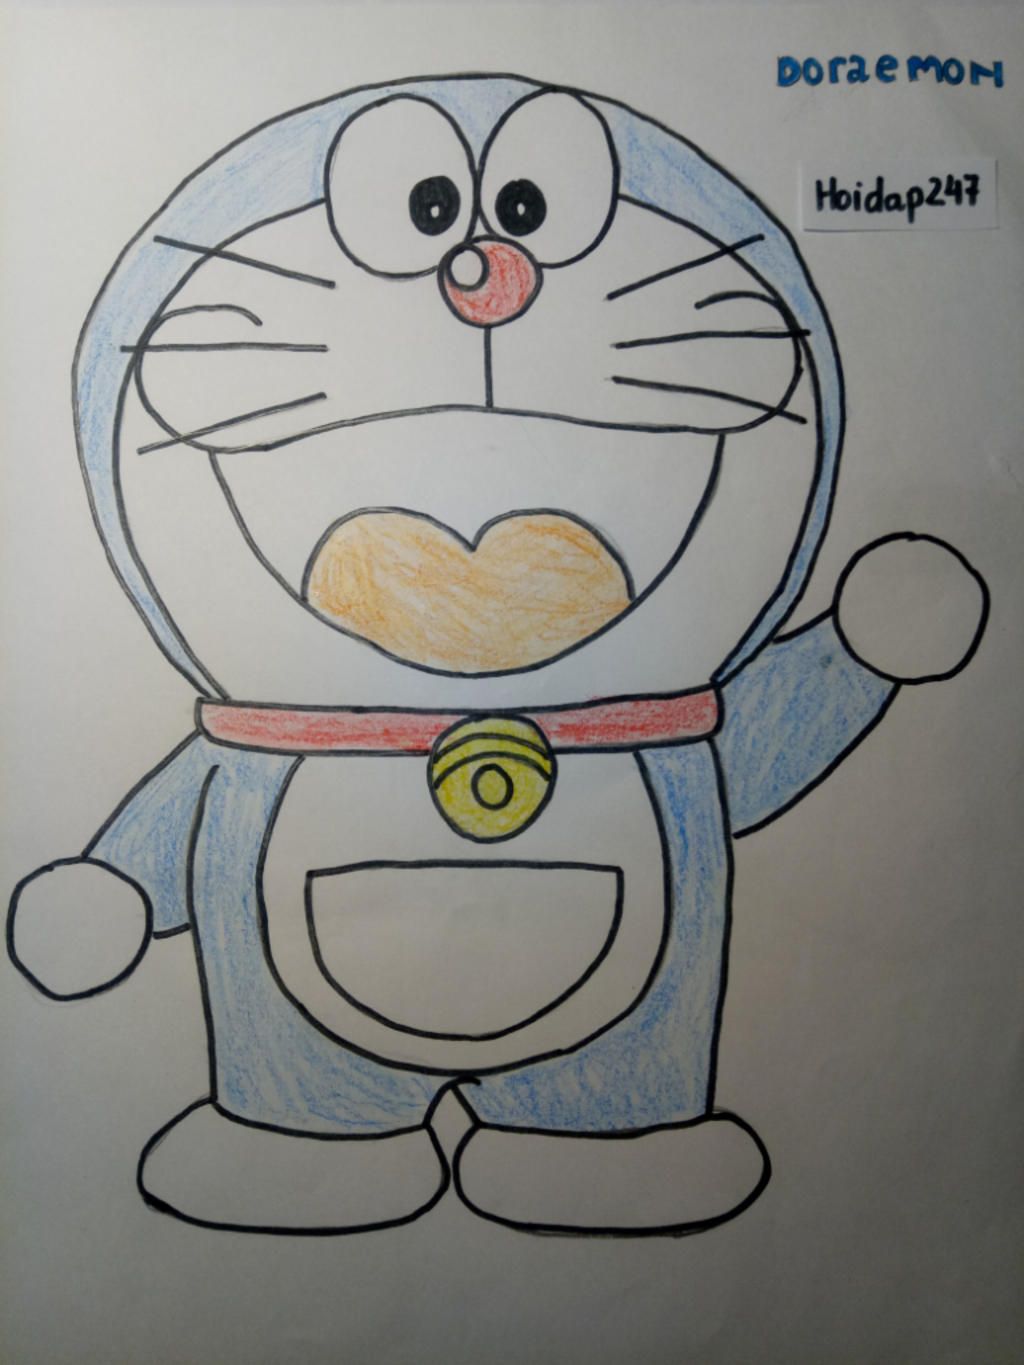 Tranh Doraemon sẽ đem lại không gian sống đầy màu sắc và sinh động cho căn phòng của bạn. Với những bức vẽ kỳ diệu, chuyến phiêu lưu của Doraemon và Nobita sẽ được tái hiện và thu hút sự tò mò của bạn. Hãy để tâm hồn bay bổng với vẽ tranh Doraemon ở bất cứ đâu!